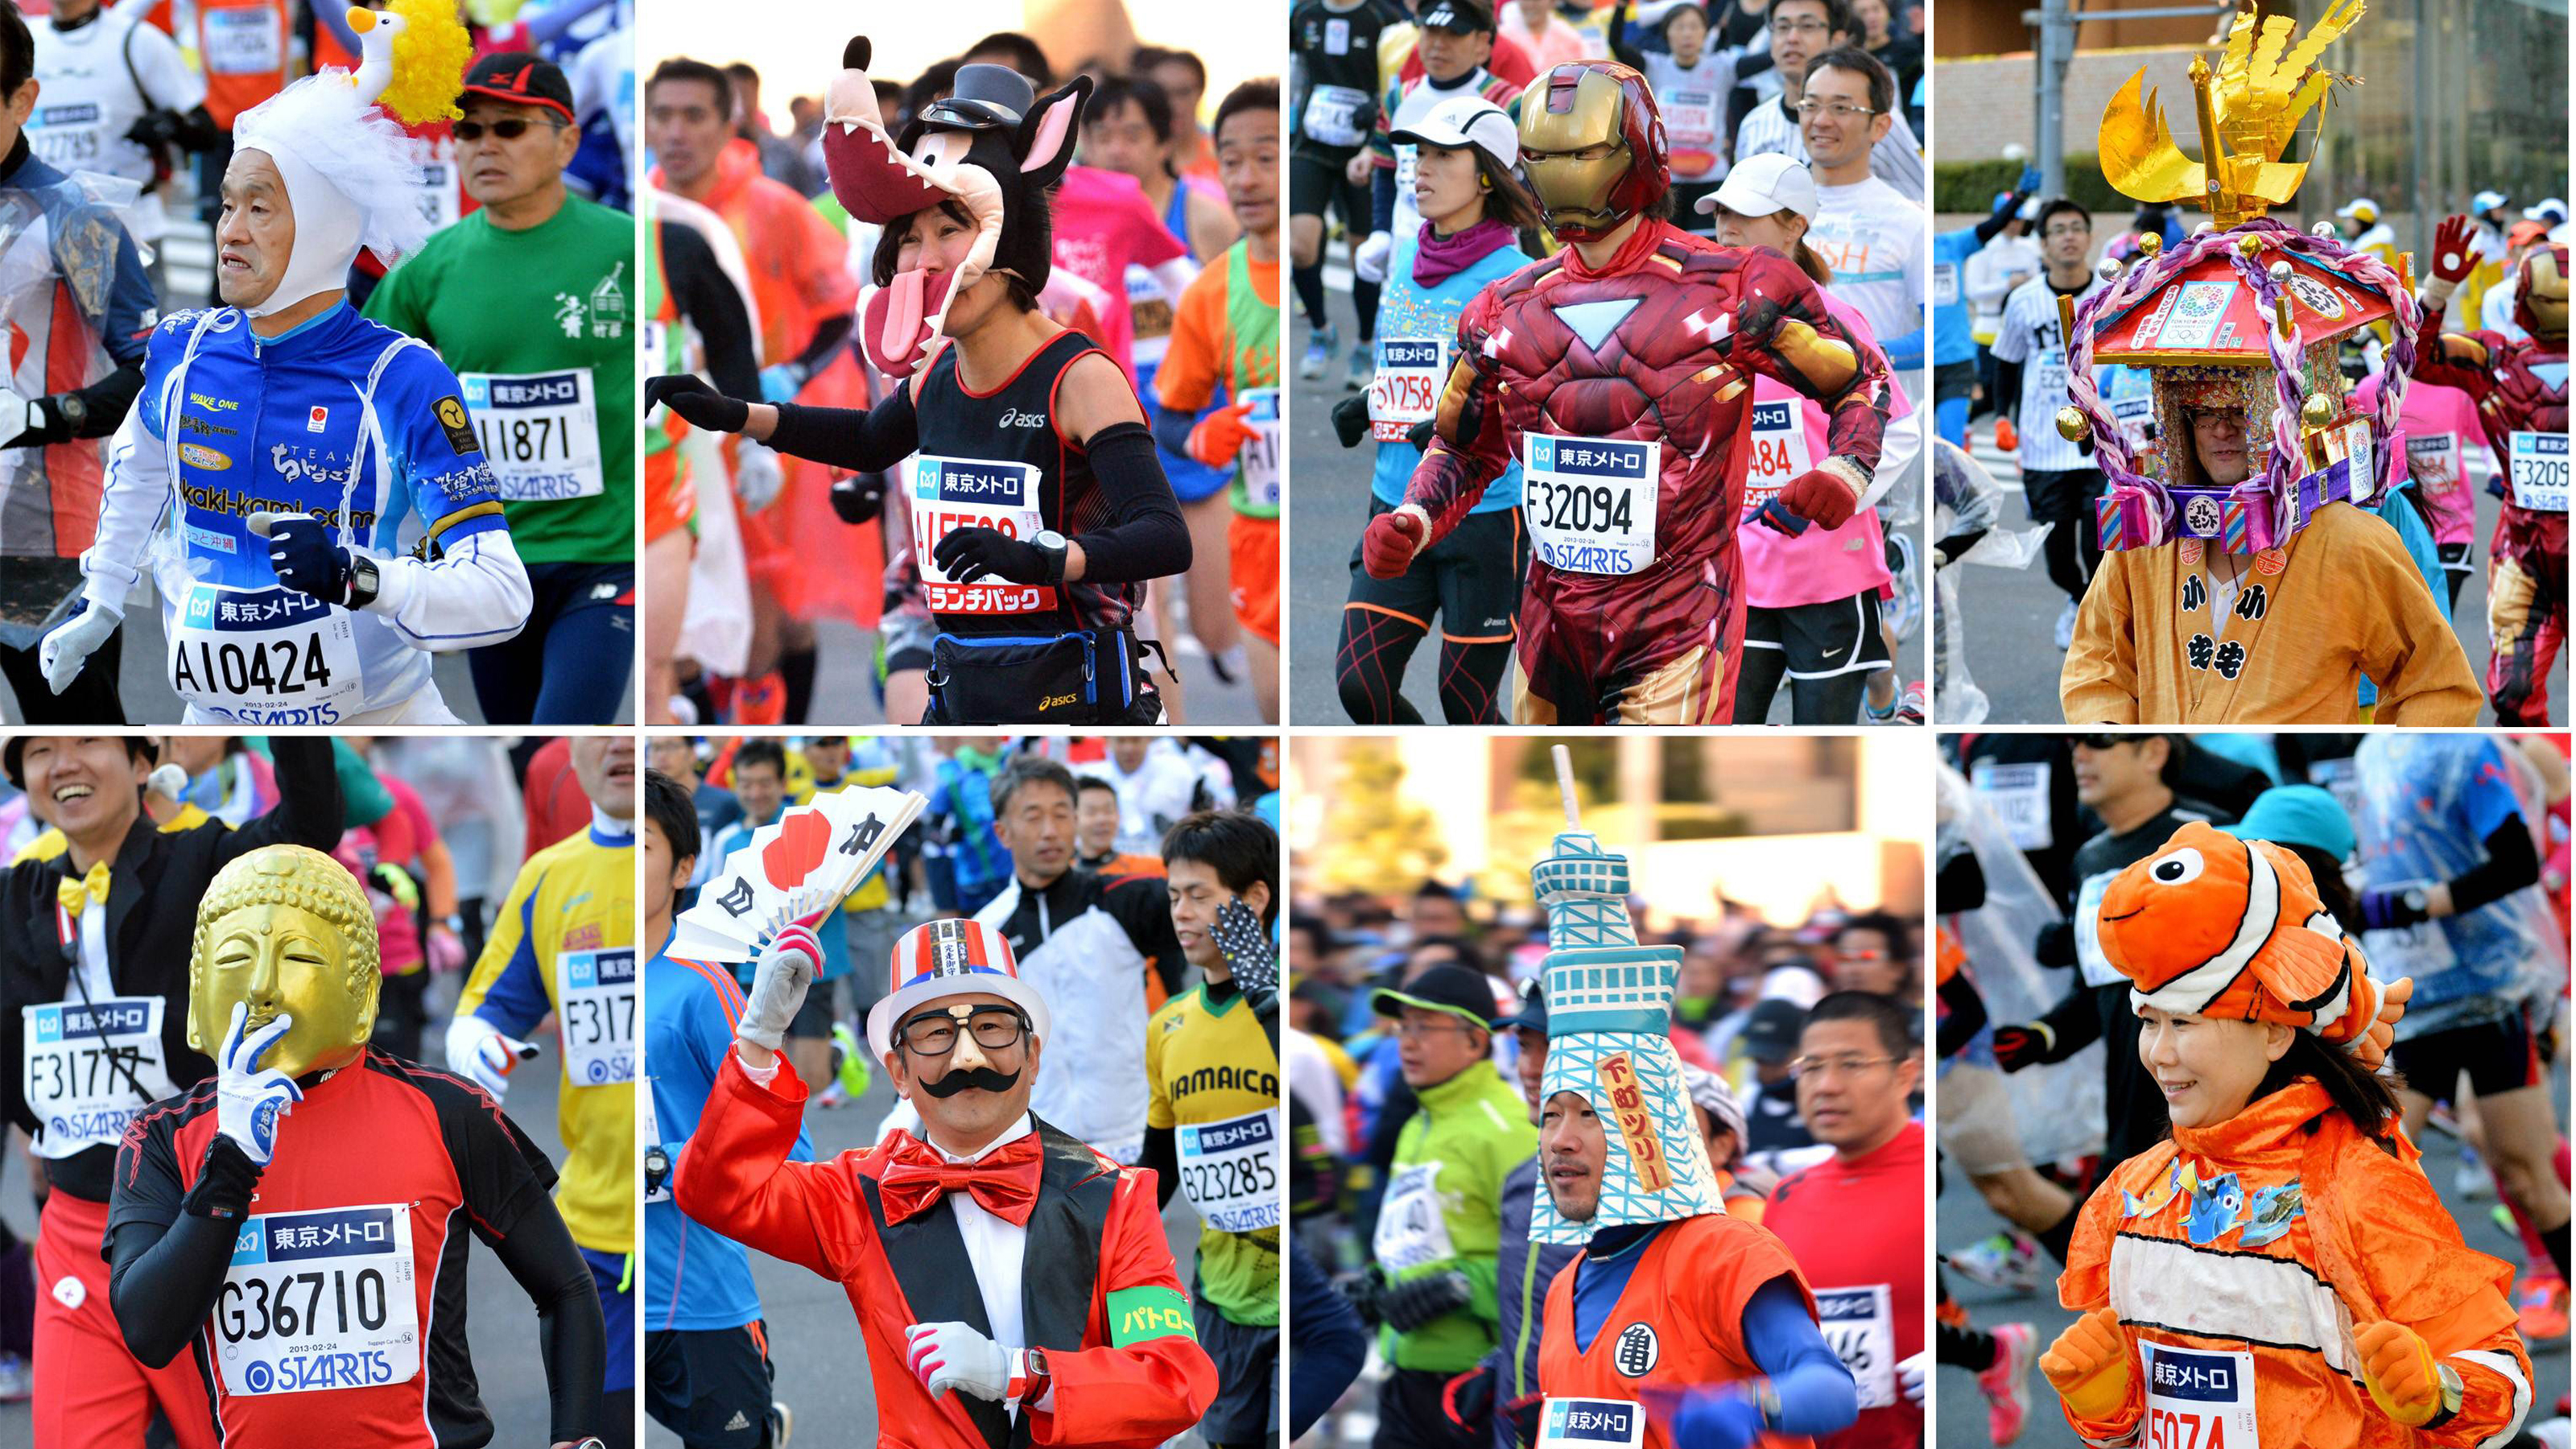 Tokyo Marathon 03 2015 Locos por correr